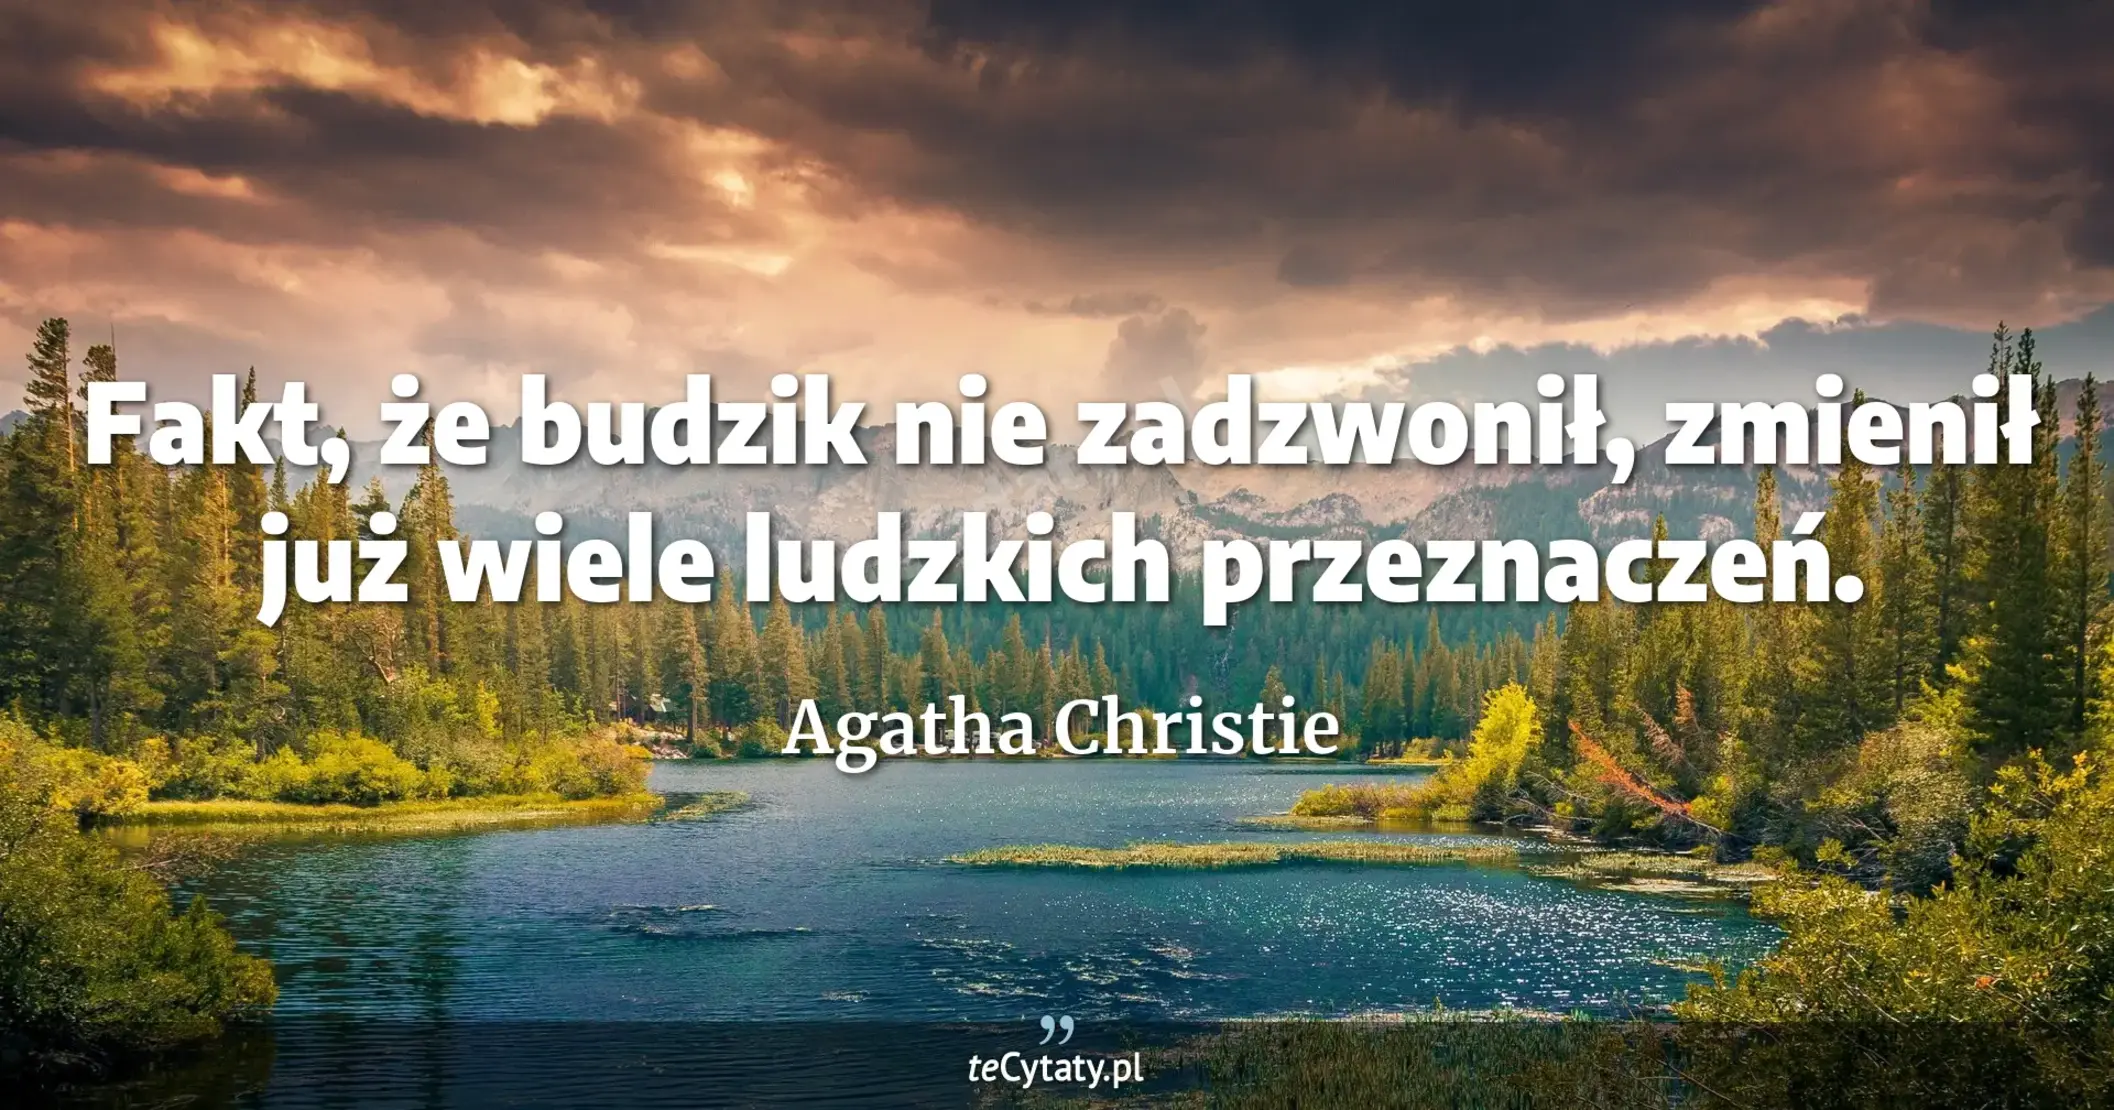 Fakt, że budzik nie zadzwonił, zmienił już wiele ludzkich przeznaczeń. - Agatha Christie